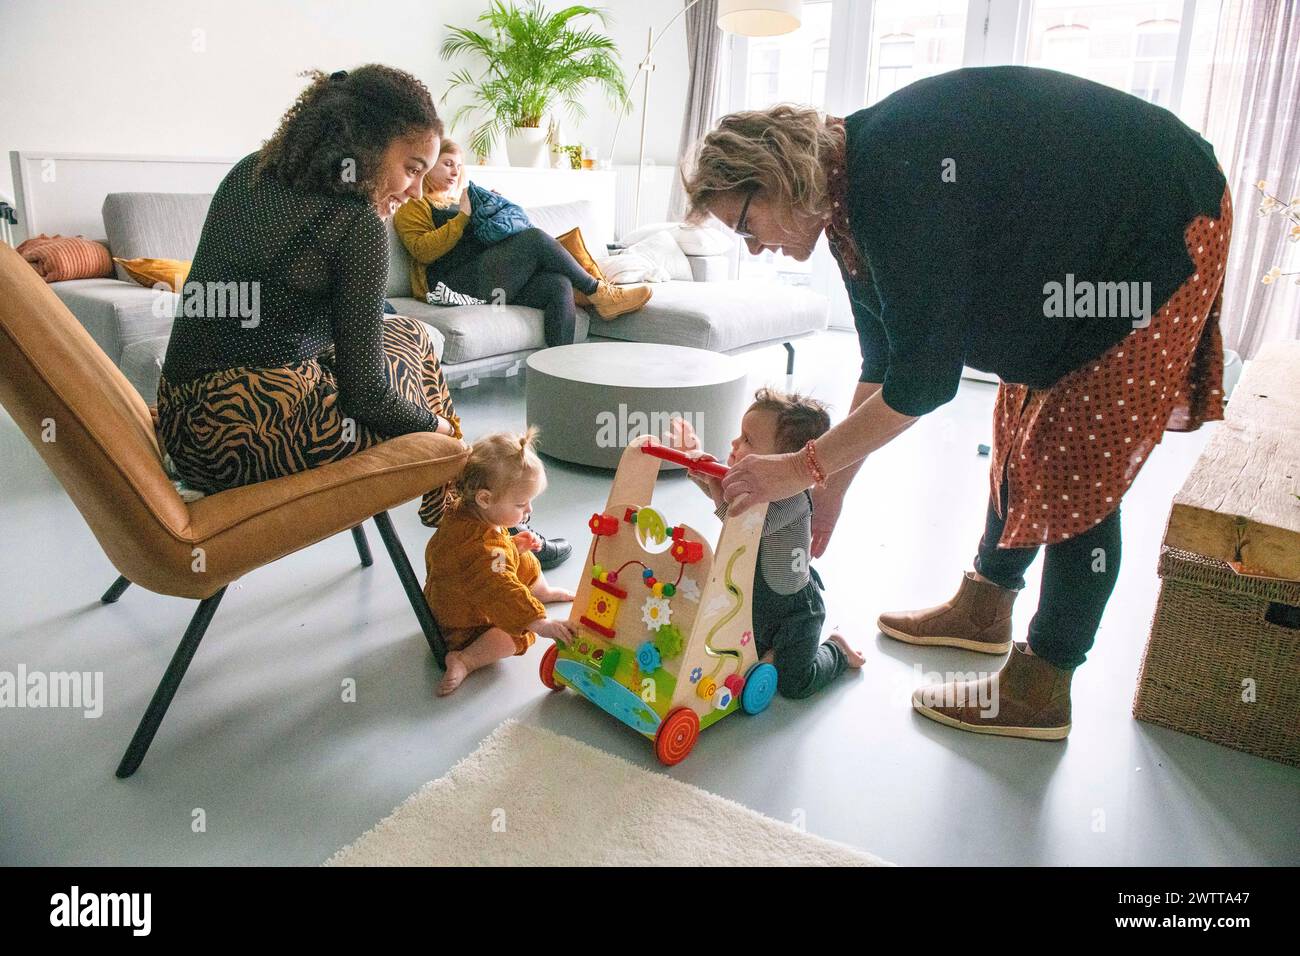 Spaß für die ganze Familie, während ein Kleinkind seine ersten Schritte mit Ermutigung macht. Stockfoto